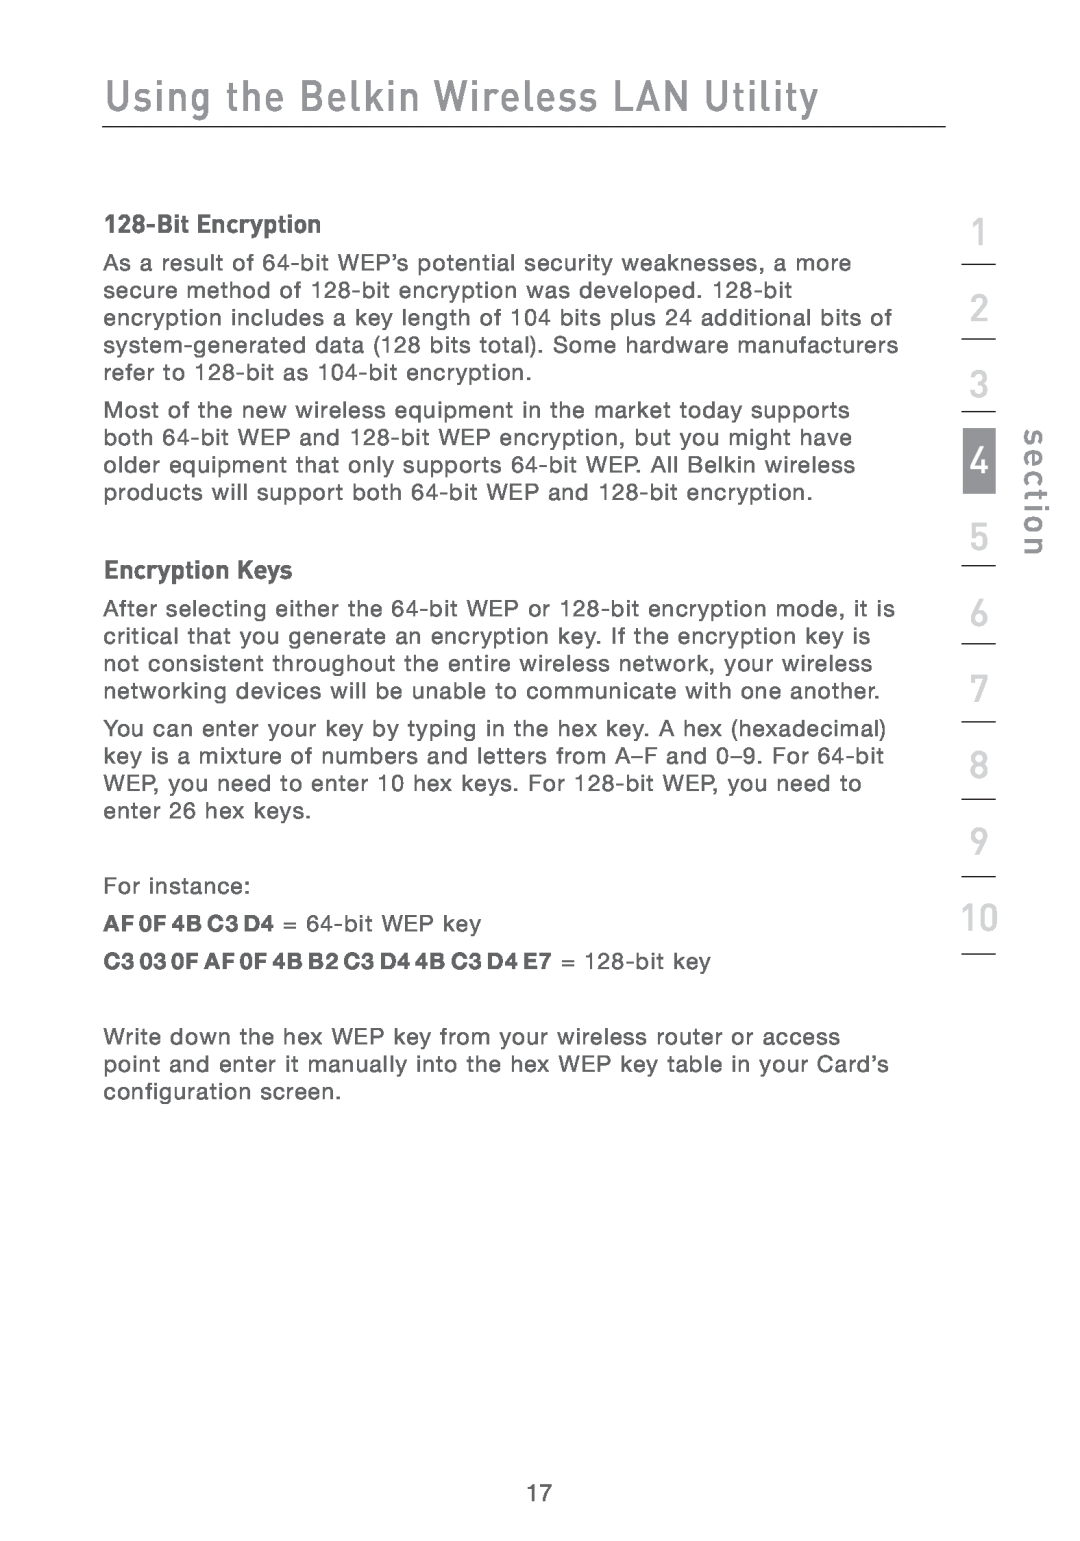 Belkin F5D7011 manual Bit Encryption, Encryption Keys, Using the Belkin Wireless LAN Utility, section 